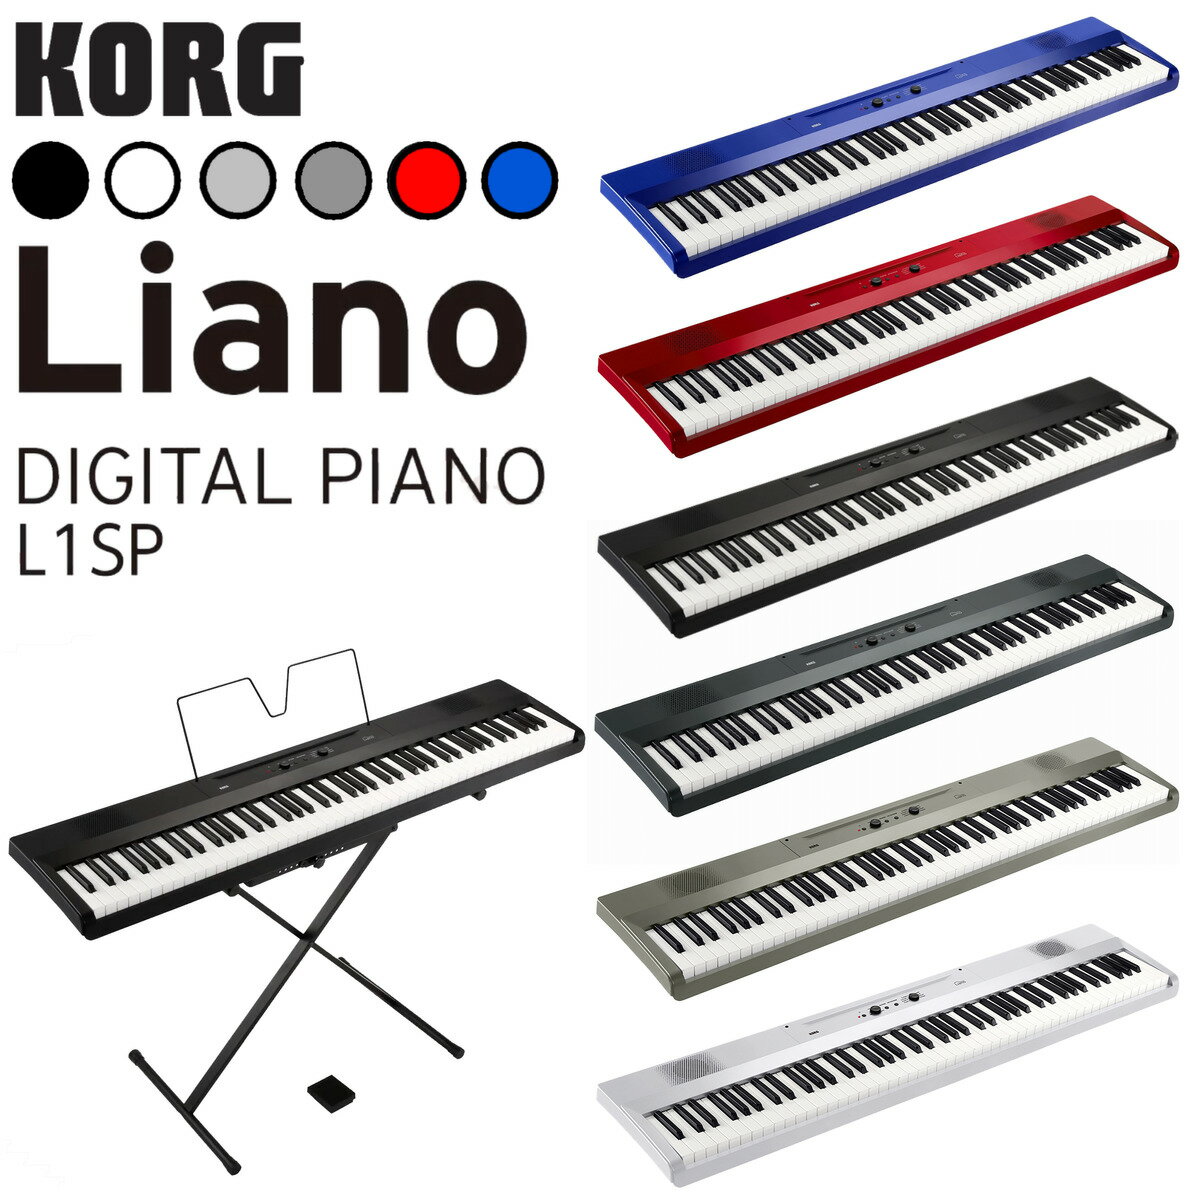 日本公司貨 KORG DIGITAL PIANO Liano L1SP 電鋼琴 電子琴 數位鋼琴 88鍵 輕便攜帶 附腳架